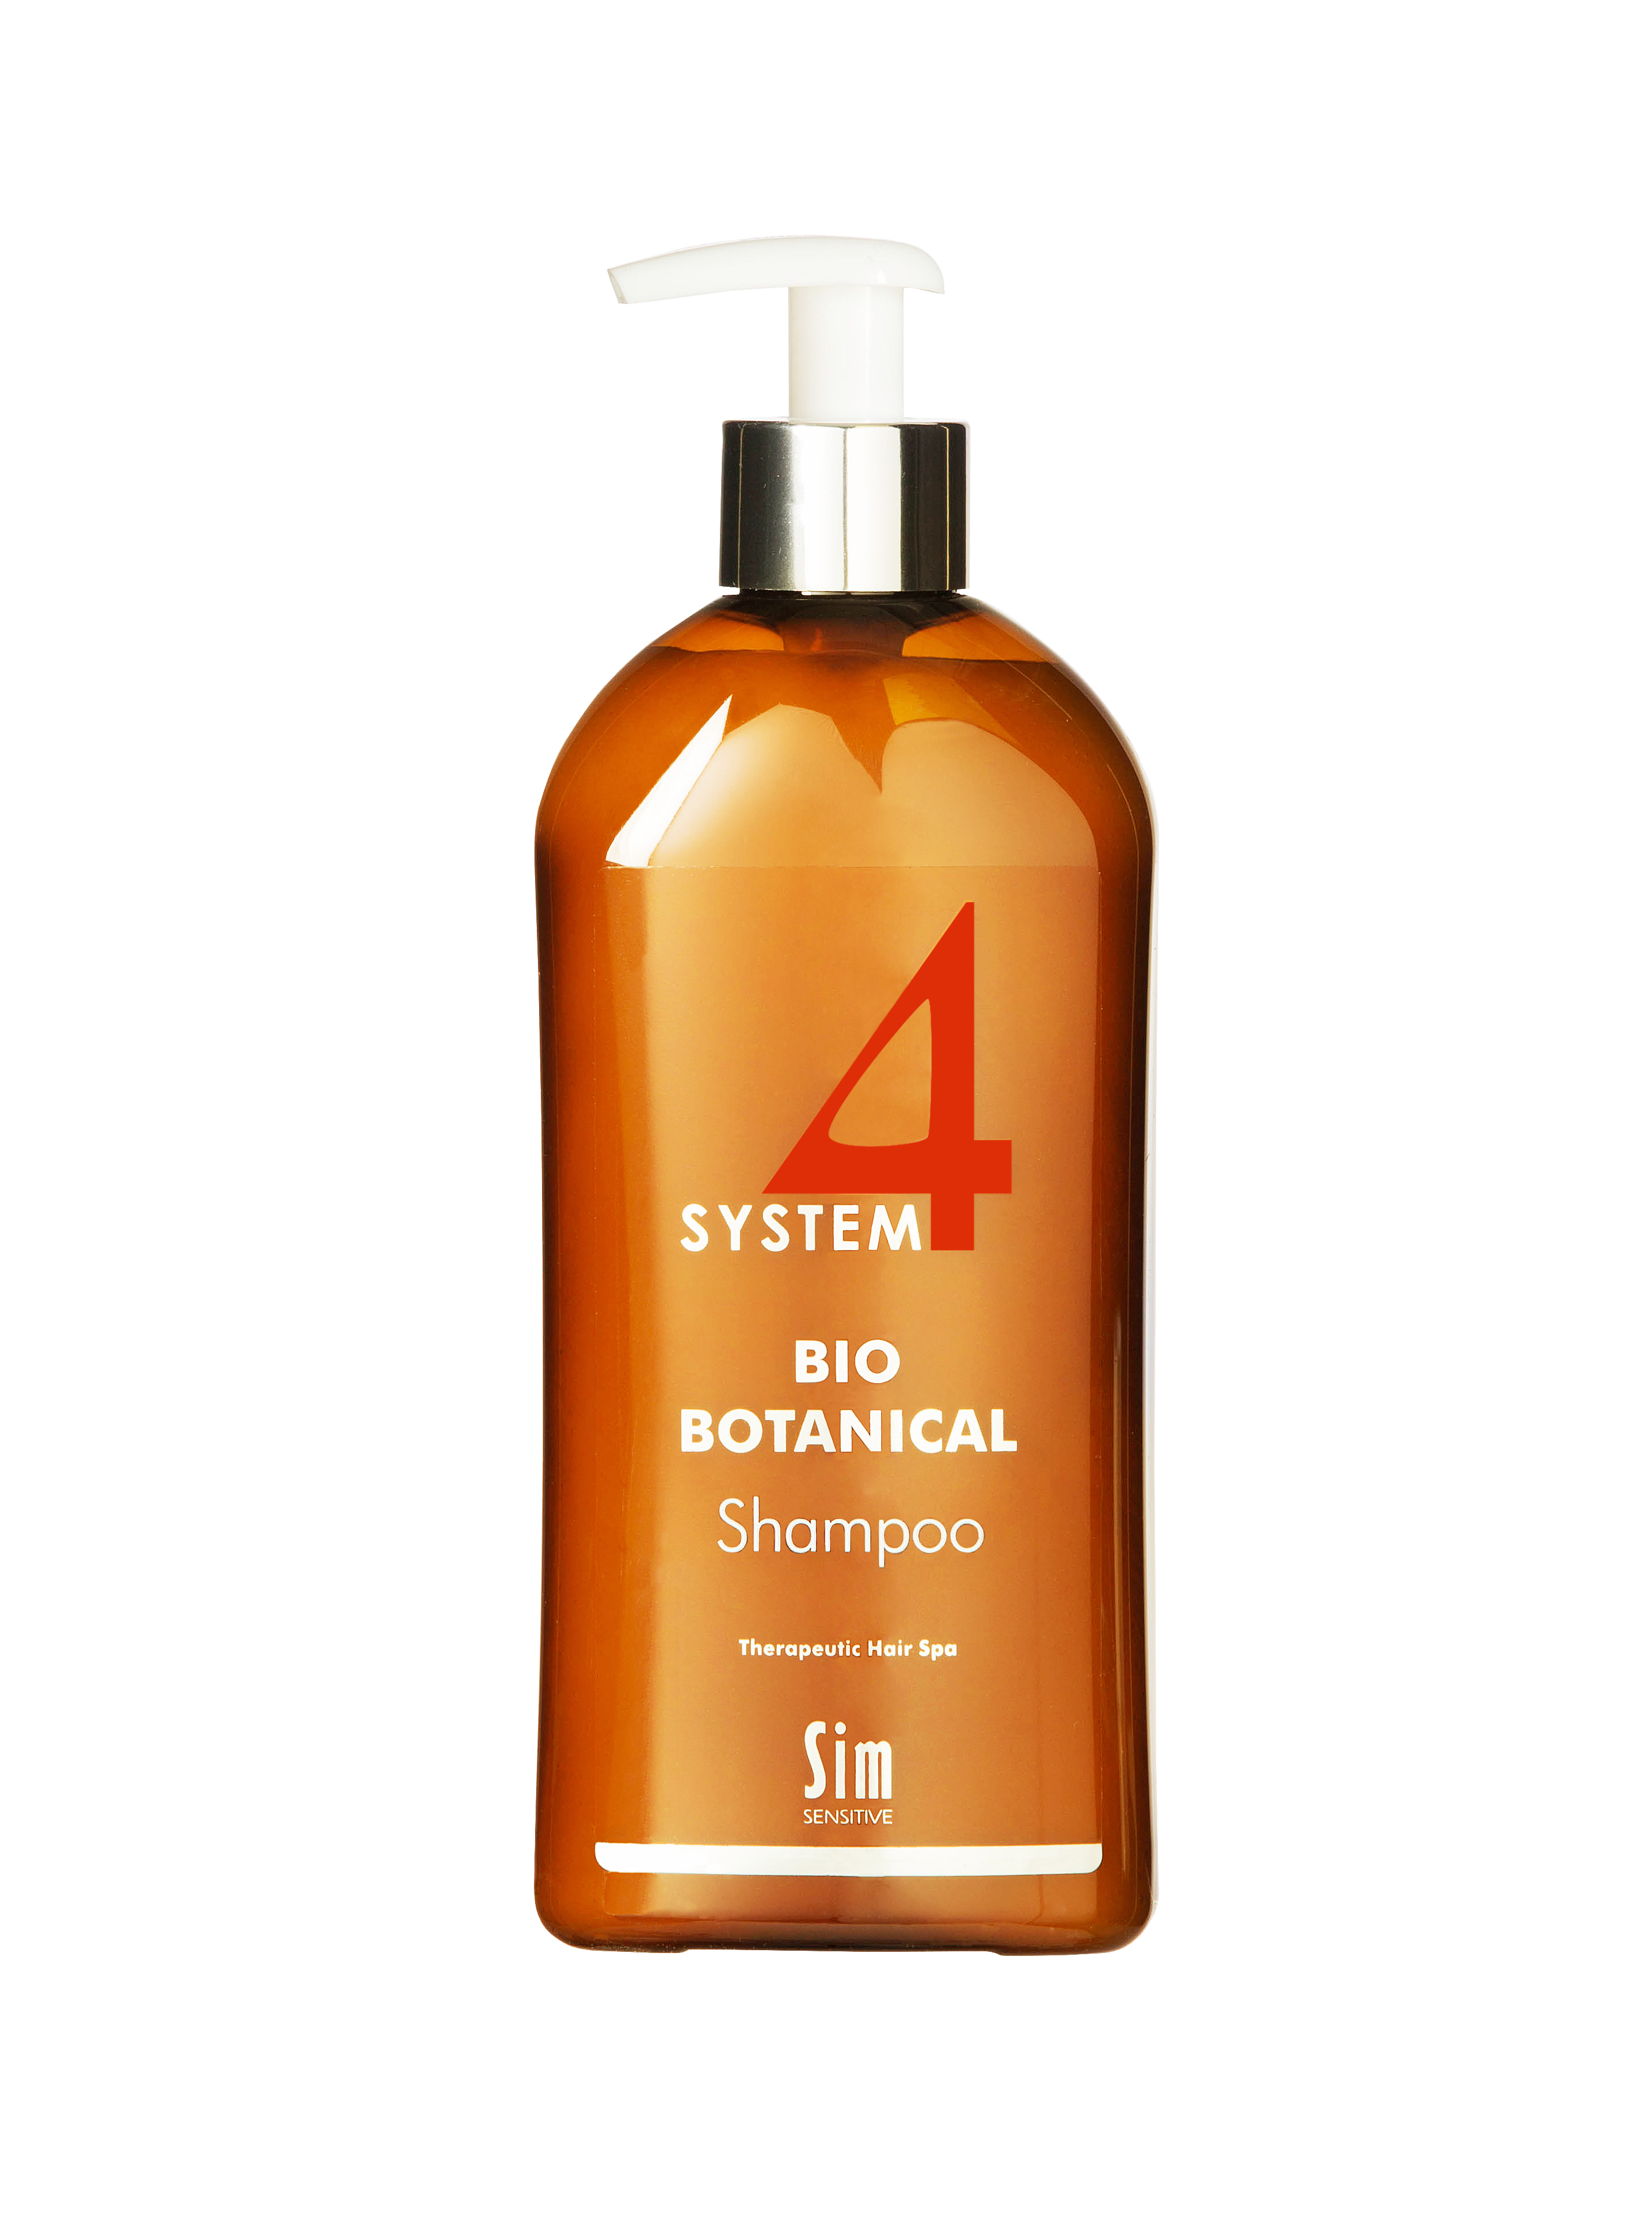 Sim Sensitive System 4 Bio Botanical Shampoo 500ml